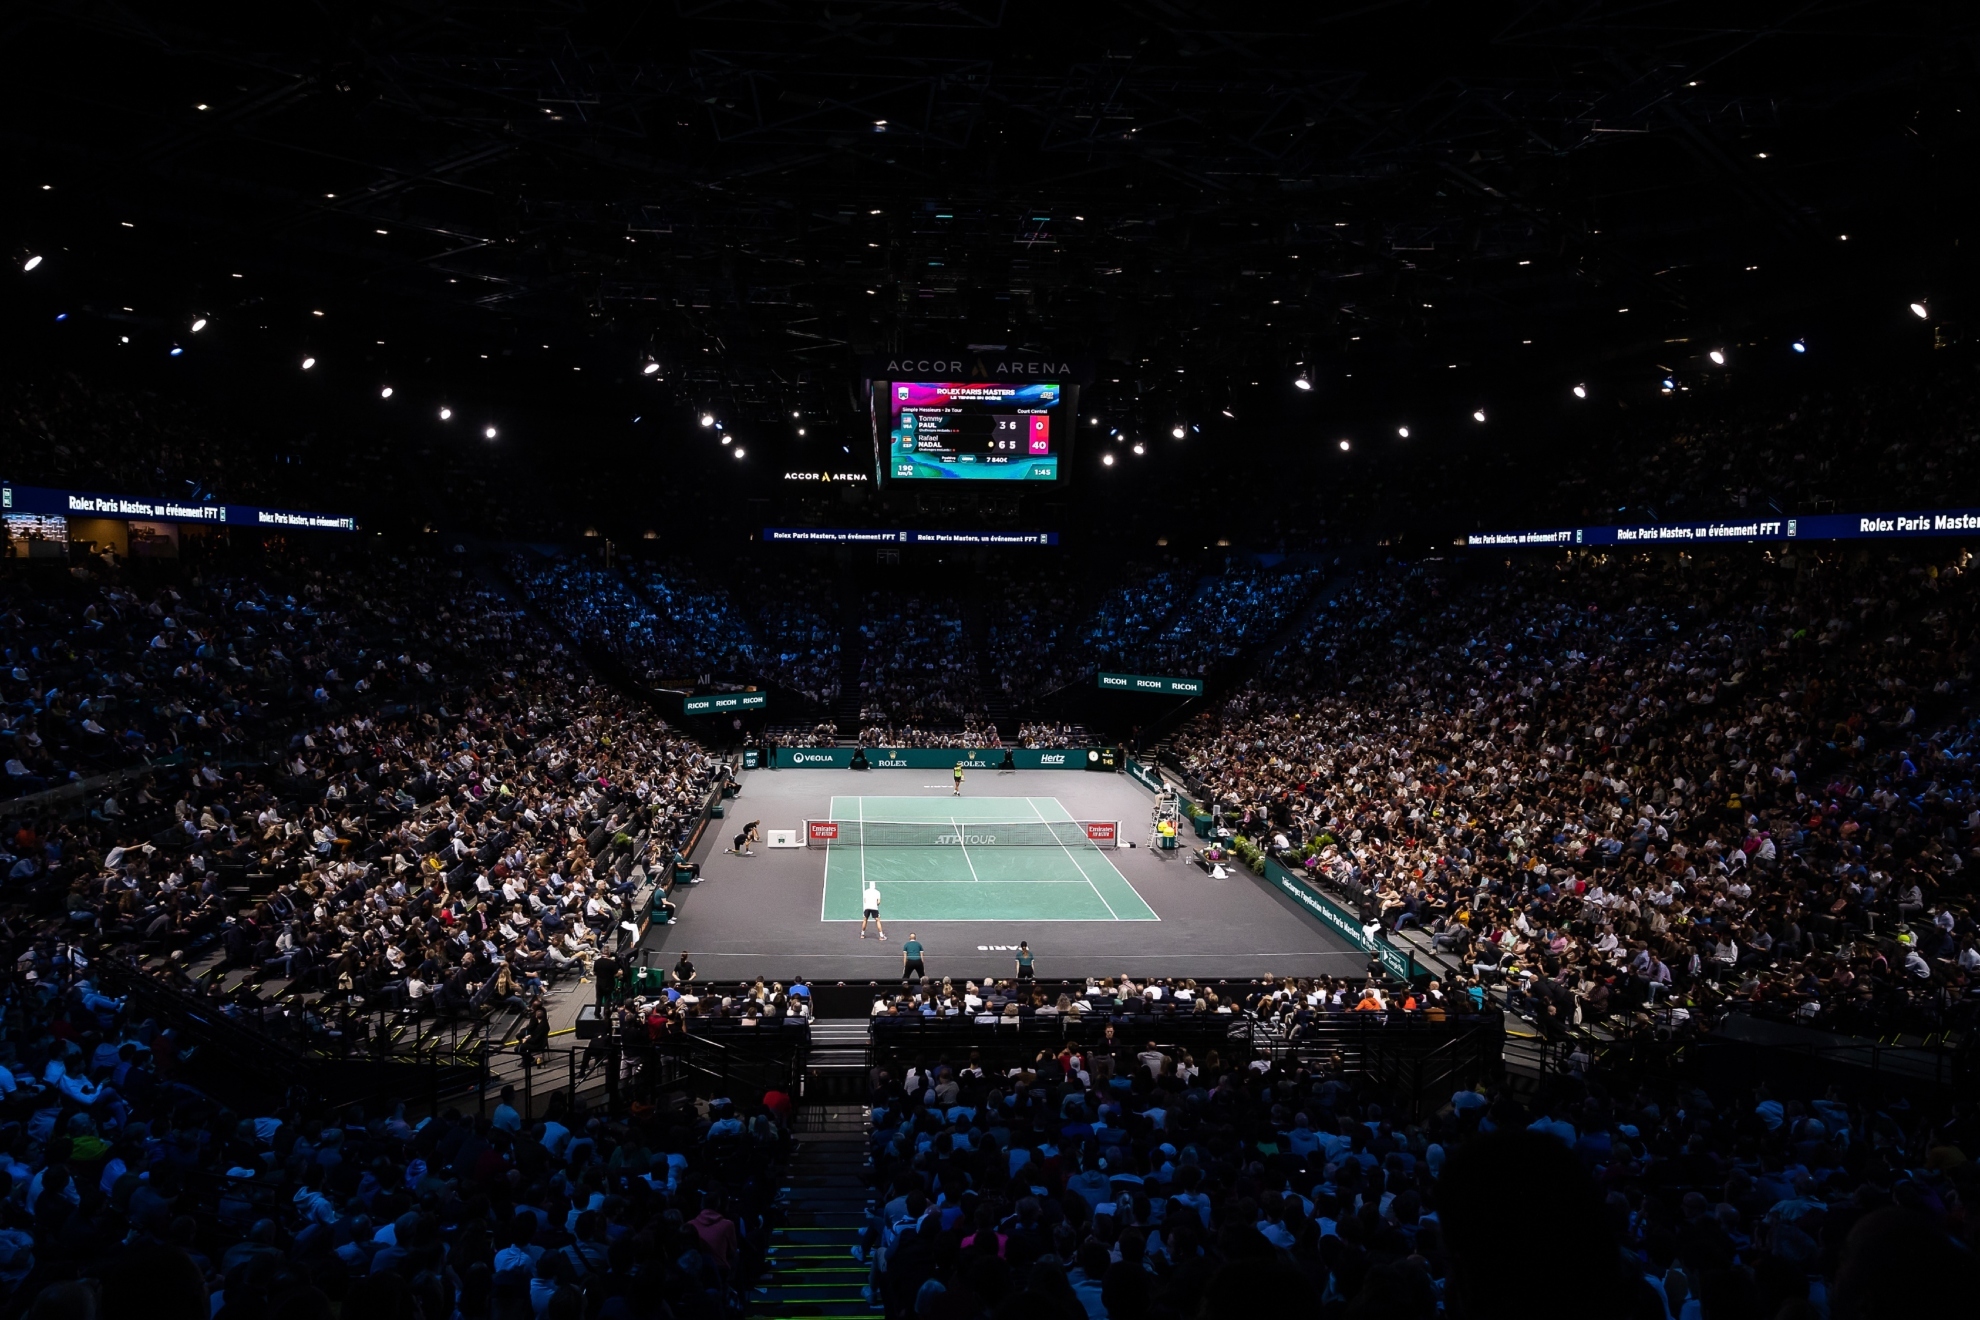 La pista central del Masters 1000 de Pars-Bercy llena para un partido